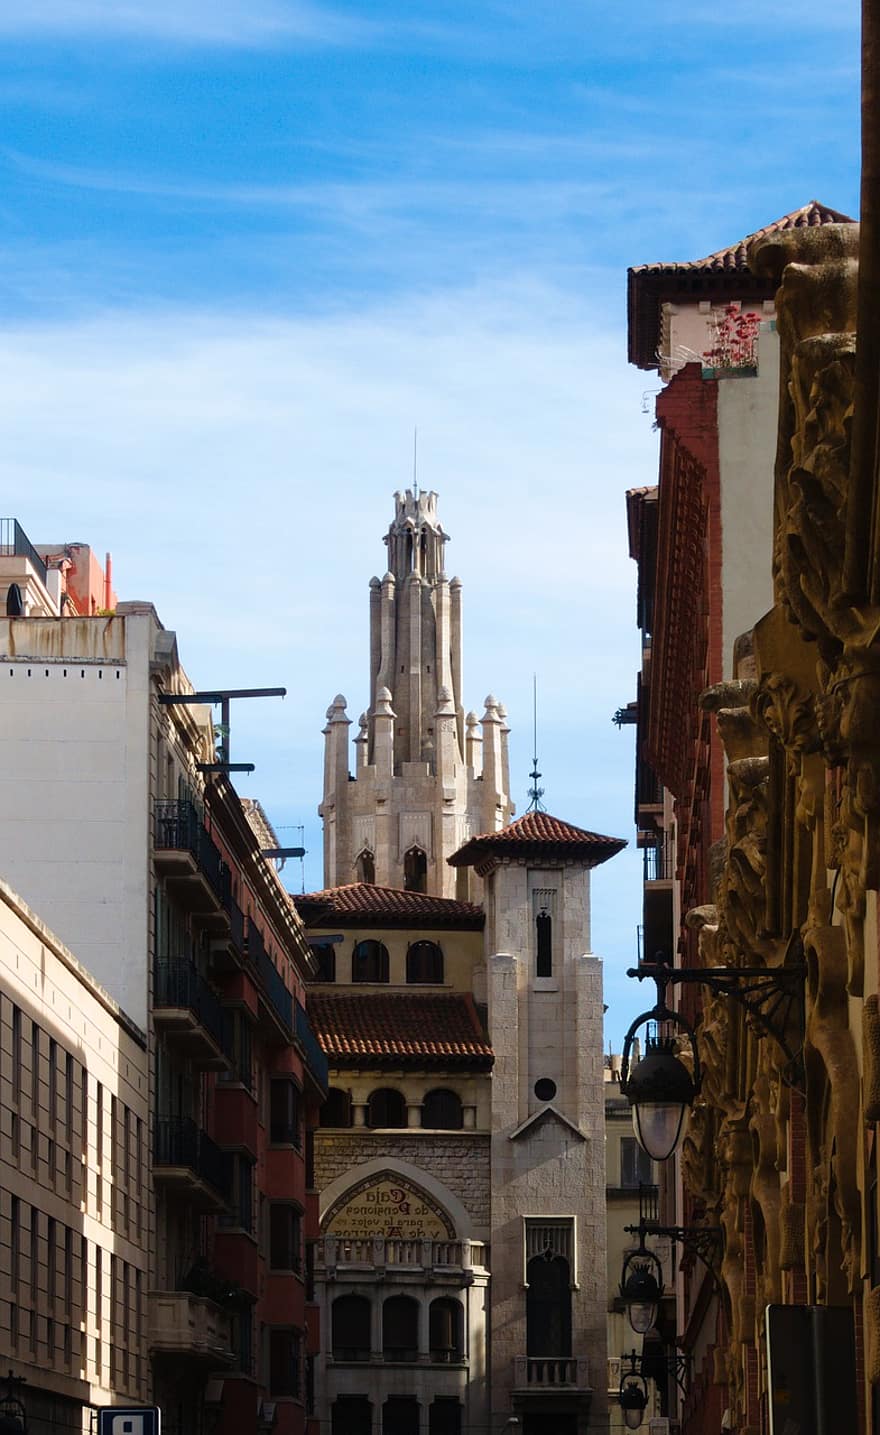 Barcelona, barri gòtic, budynek, Miasto, architektura, Bank, wieża, historyczny, punkt orientacyjny, znane miejsce, na zewnątrz budynku